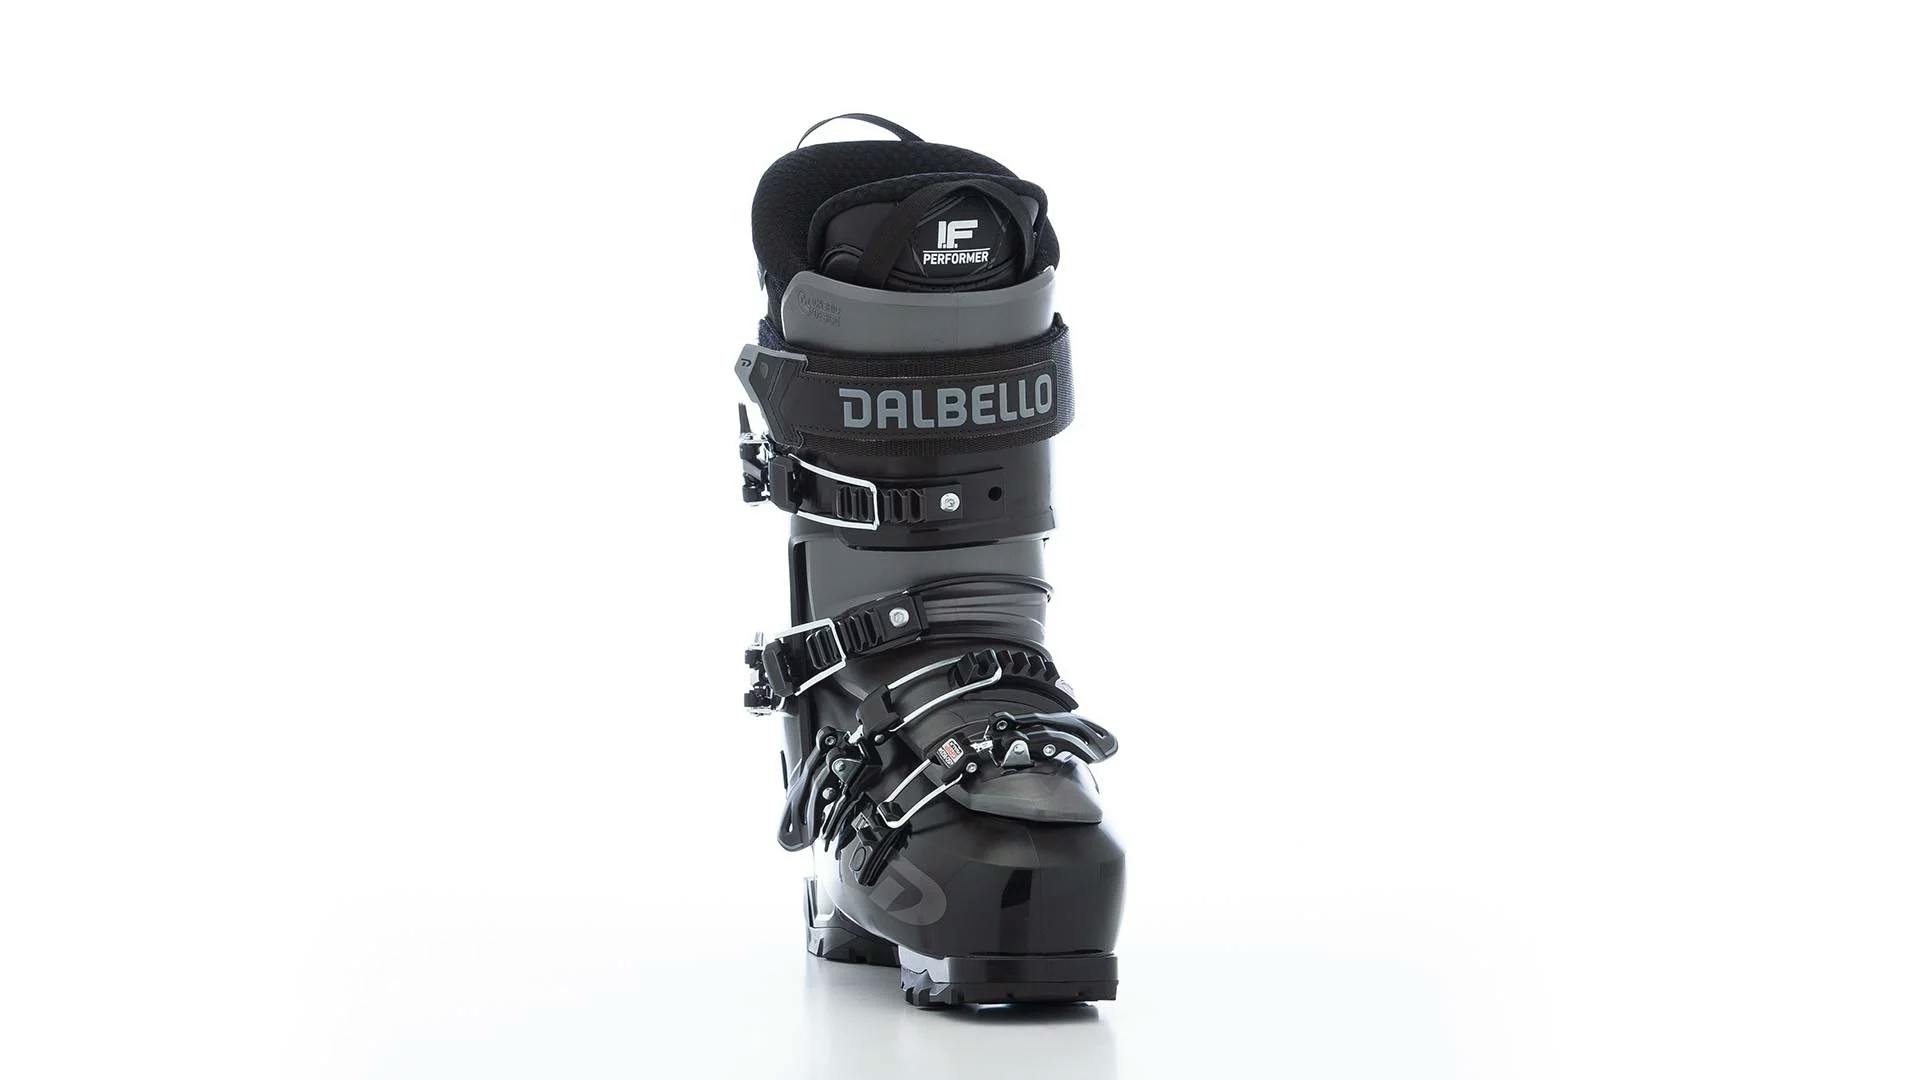 Dalbello Panterra 100 GW Ski Boots · 2023